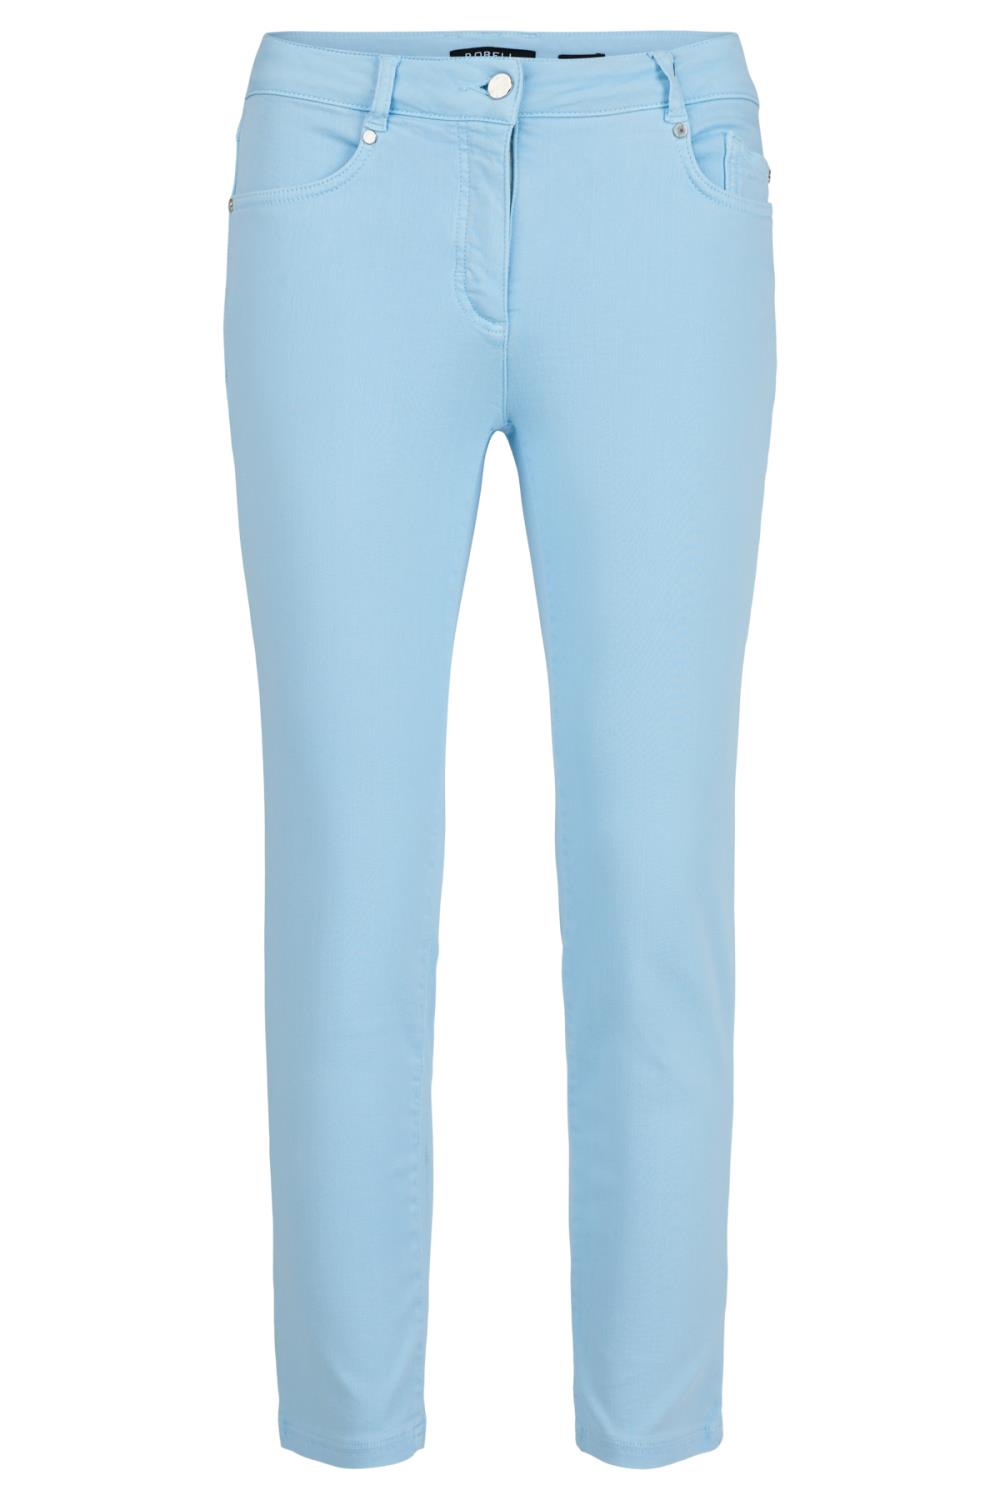 Robell Bukse Elena, 68 cm, stretch jeans, lys blå